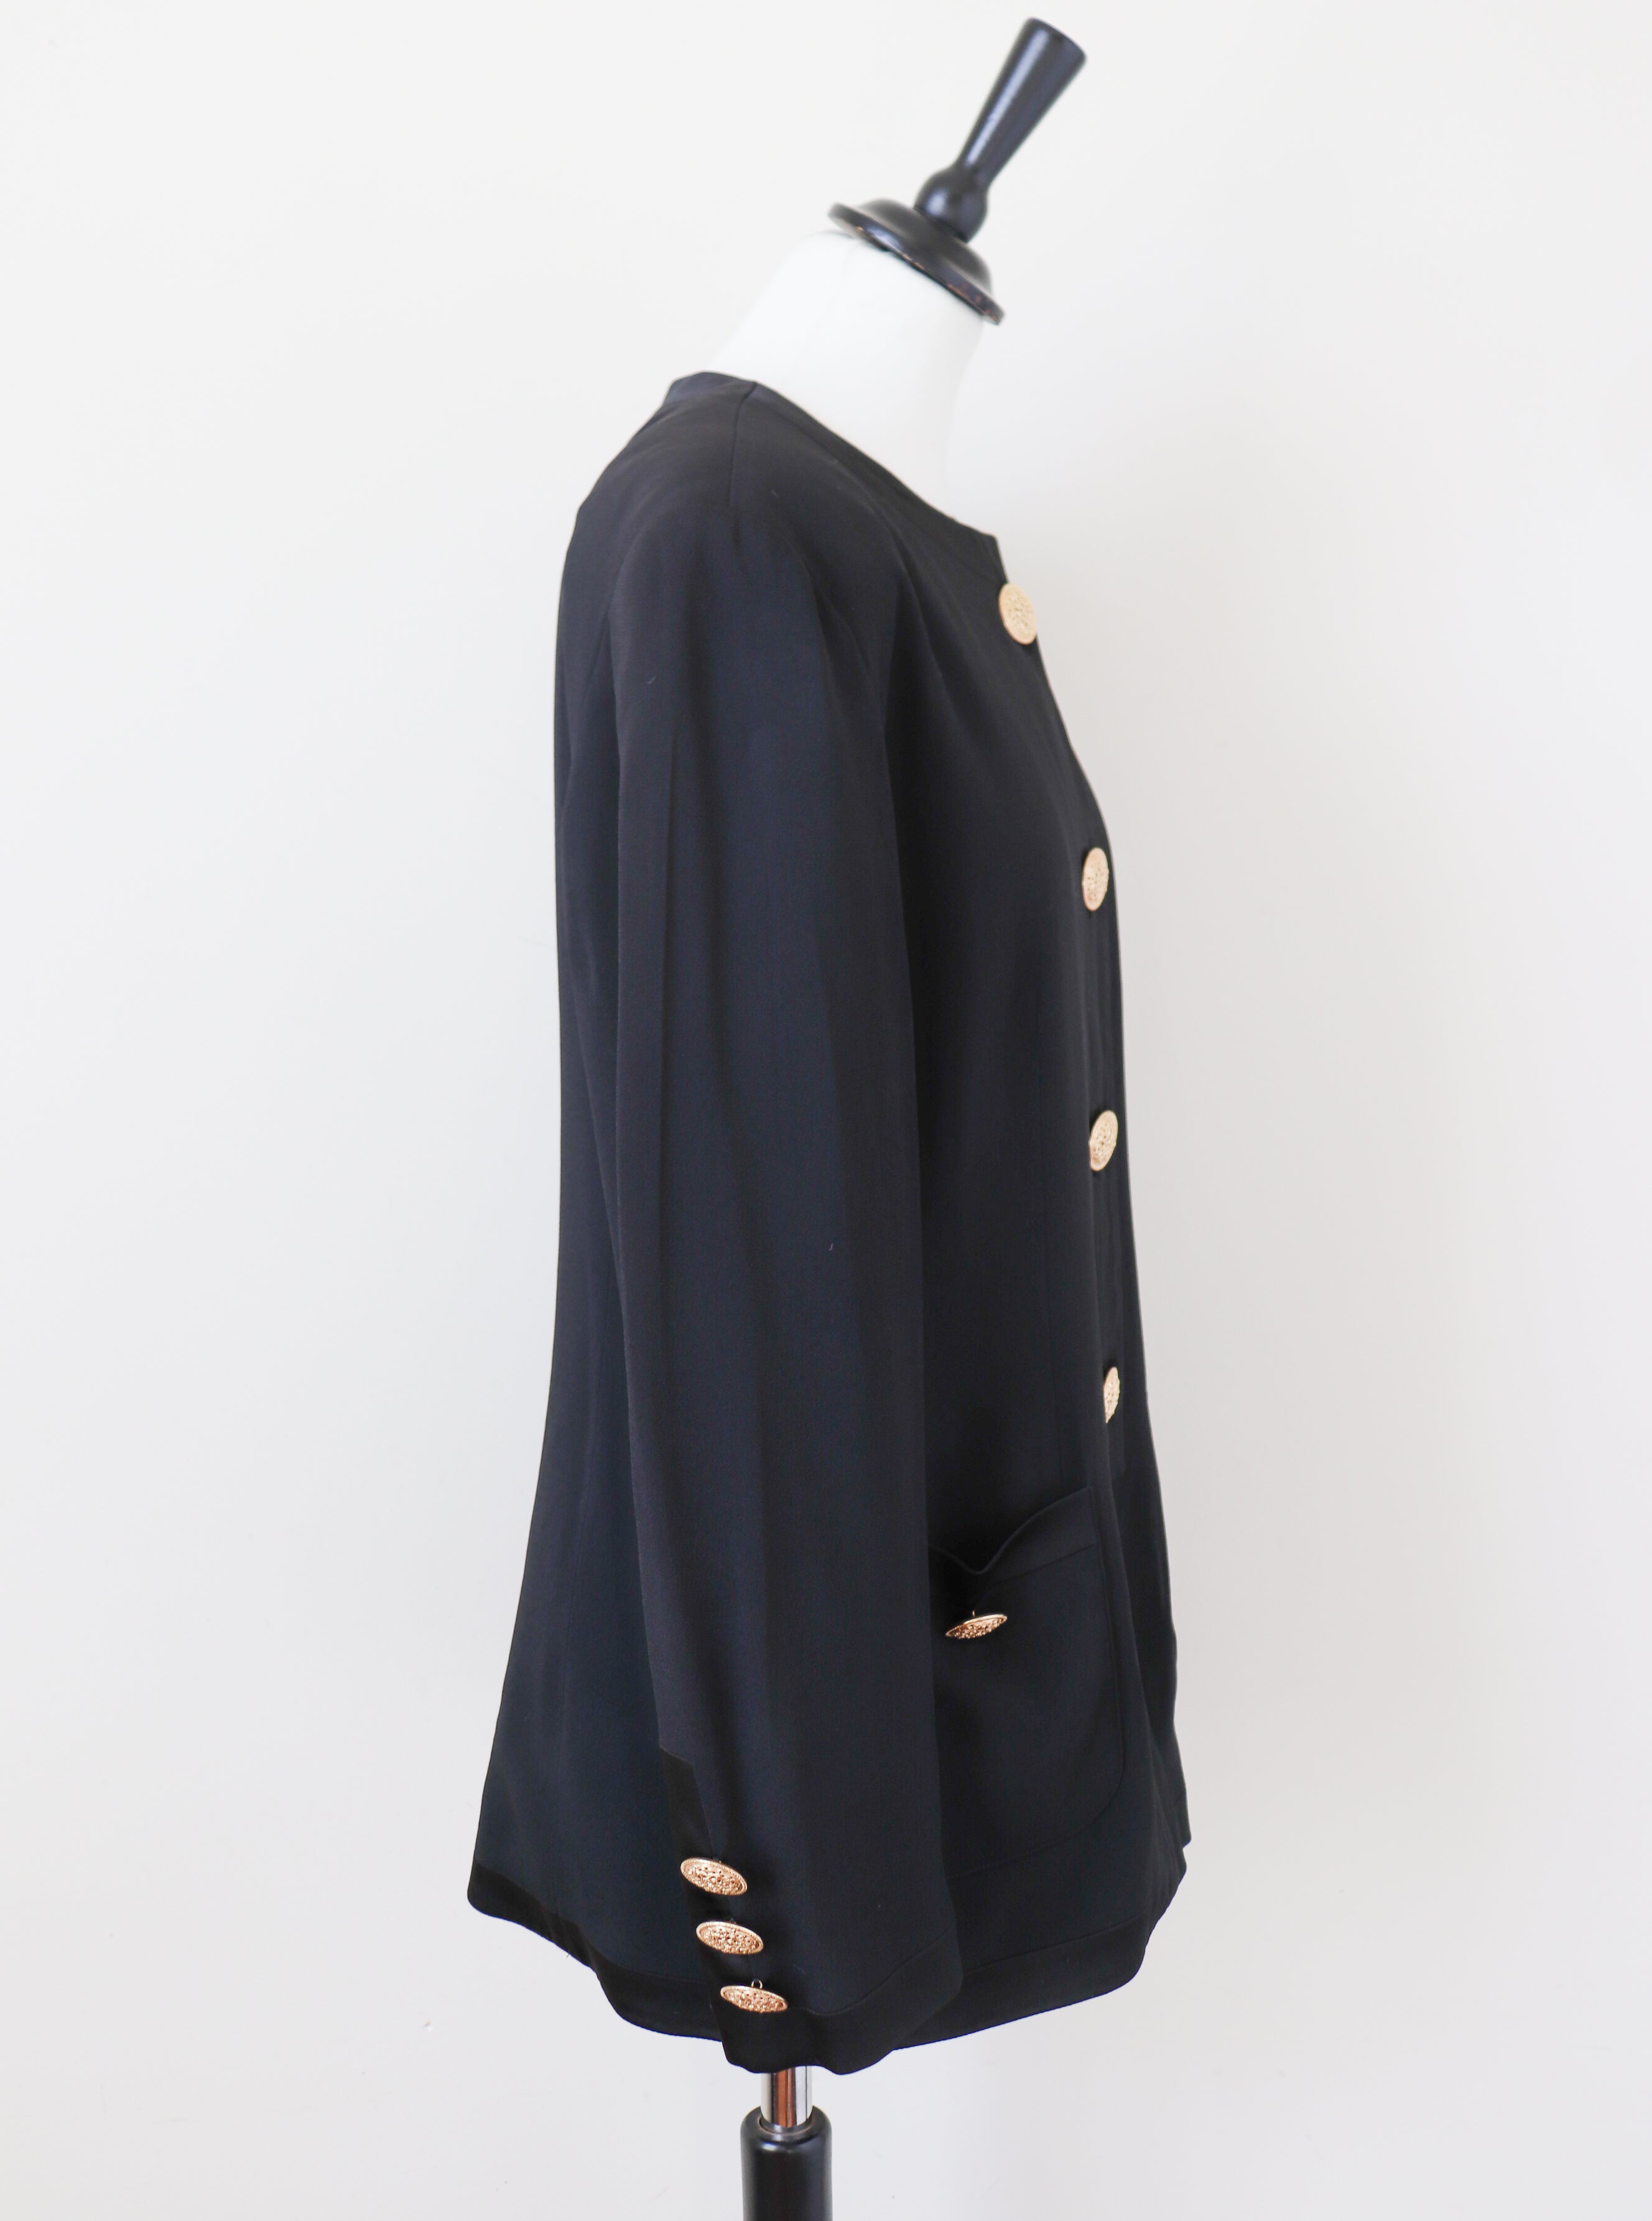 Elegance Black Collarless Jacket - Vintage 1990s - Fit UK 12 / M